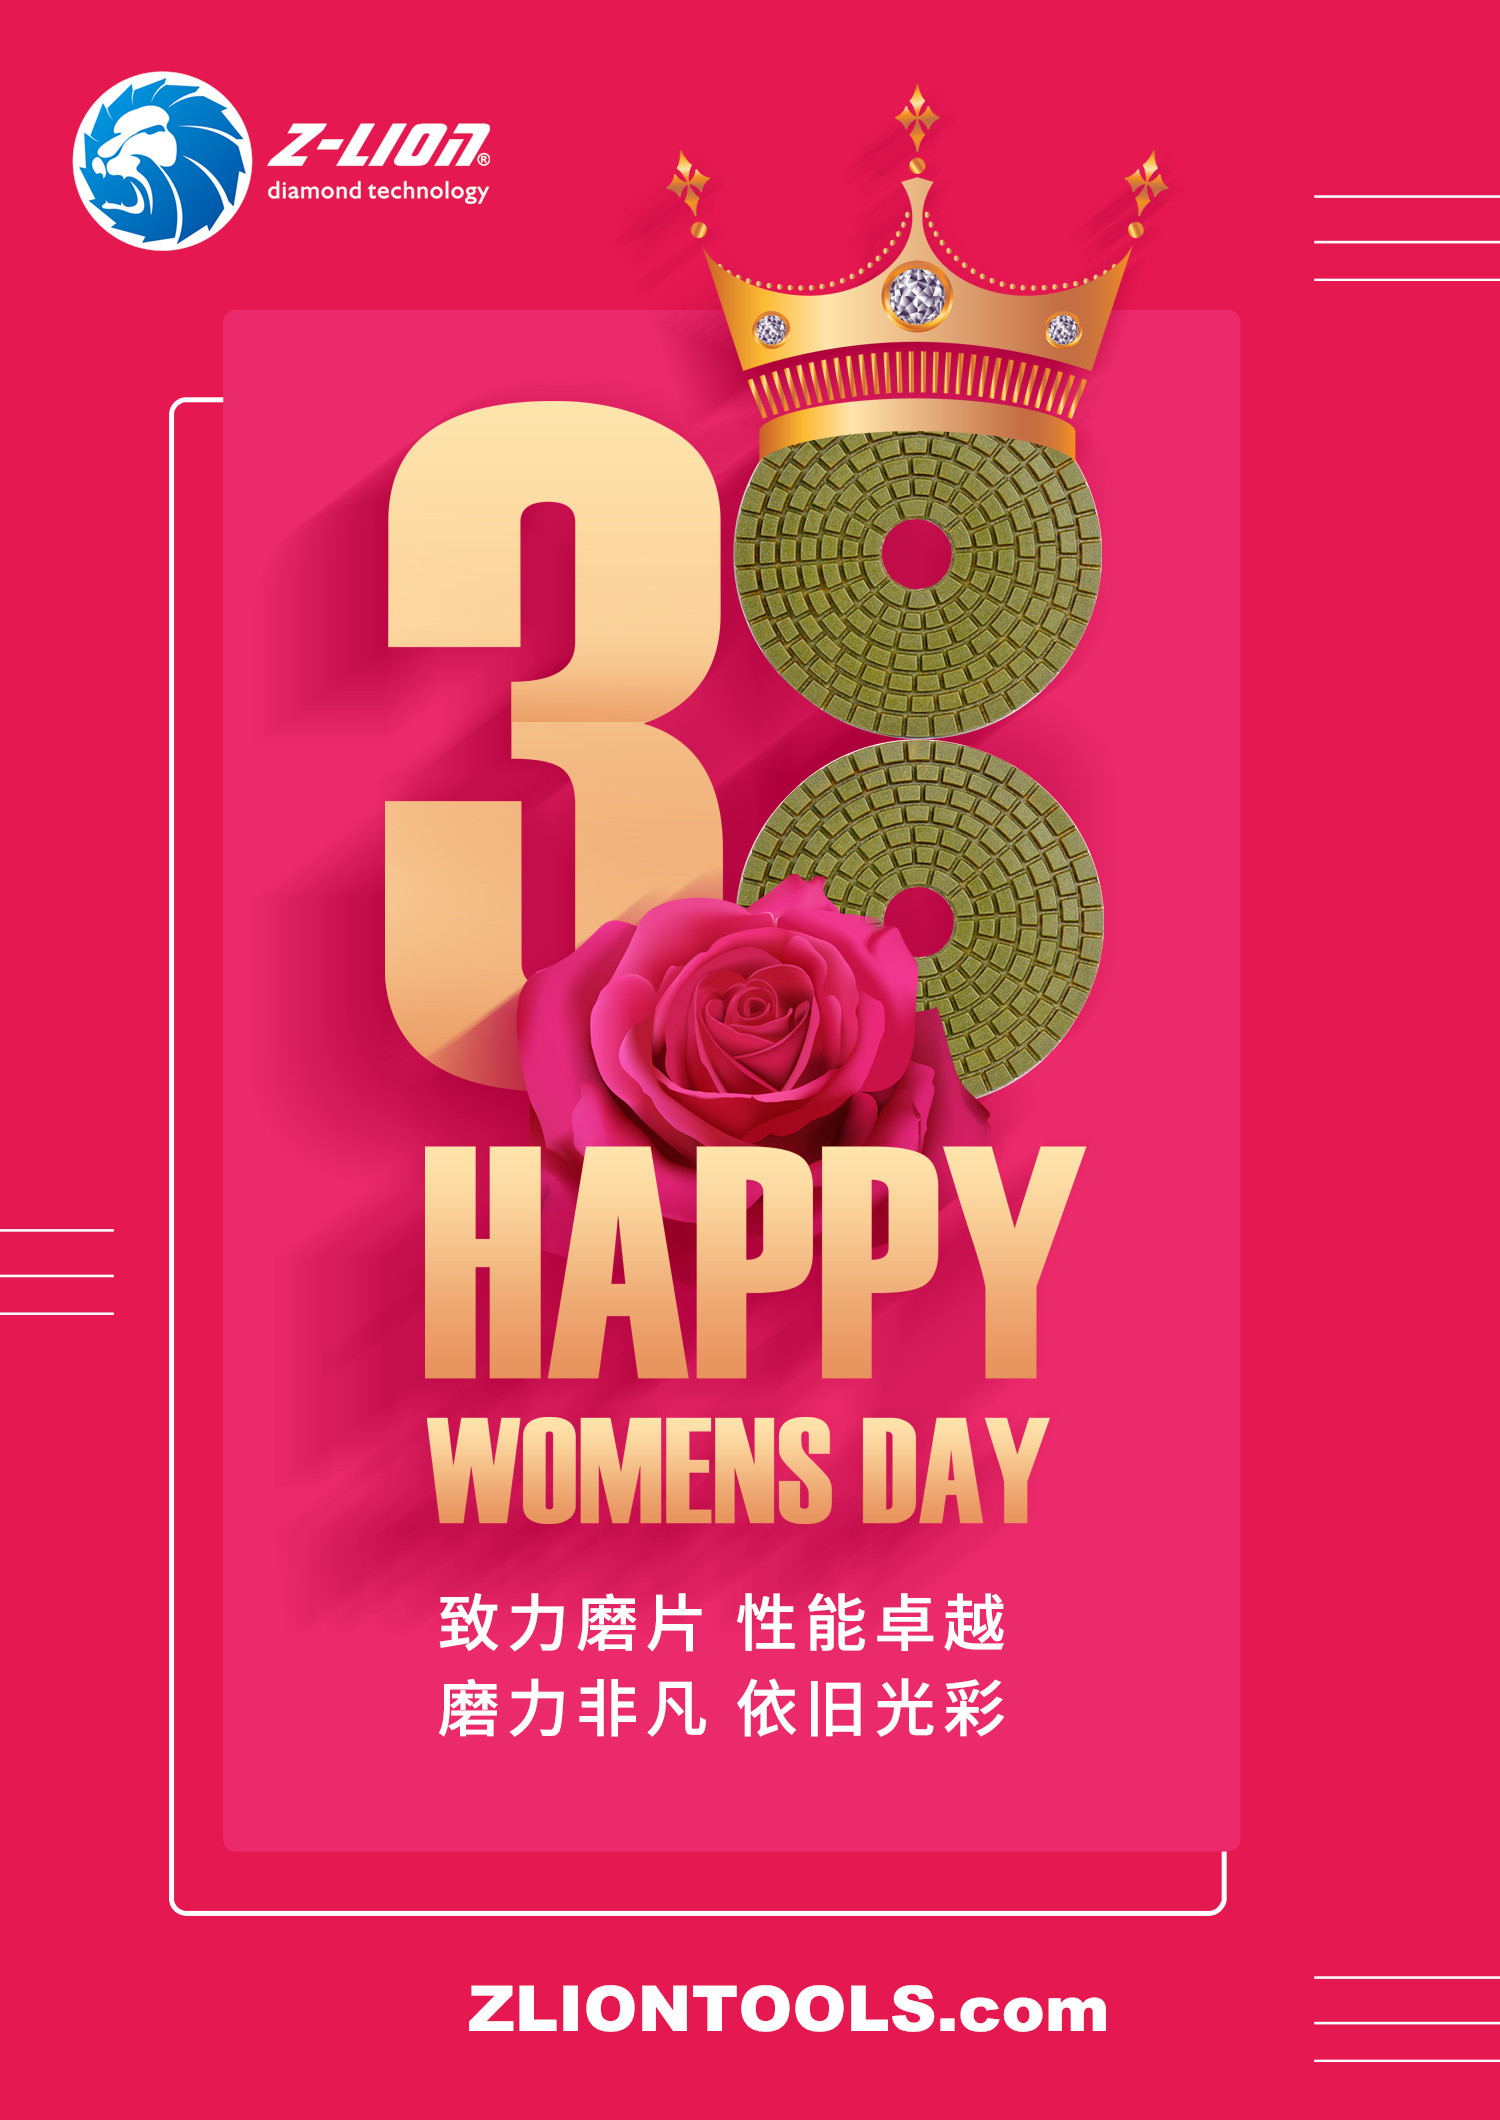 Z-LION international women's day 2020, how do you spend it?